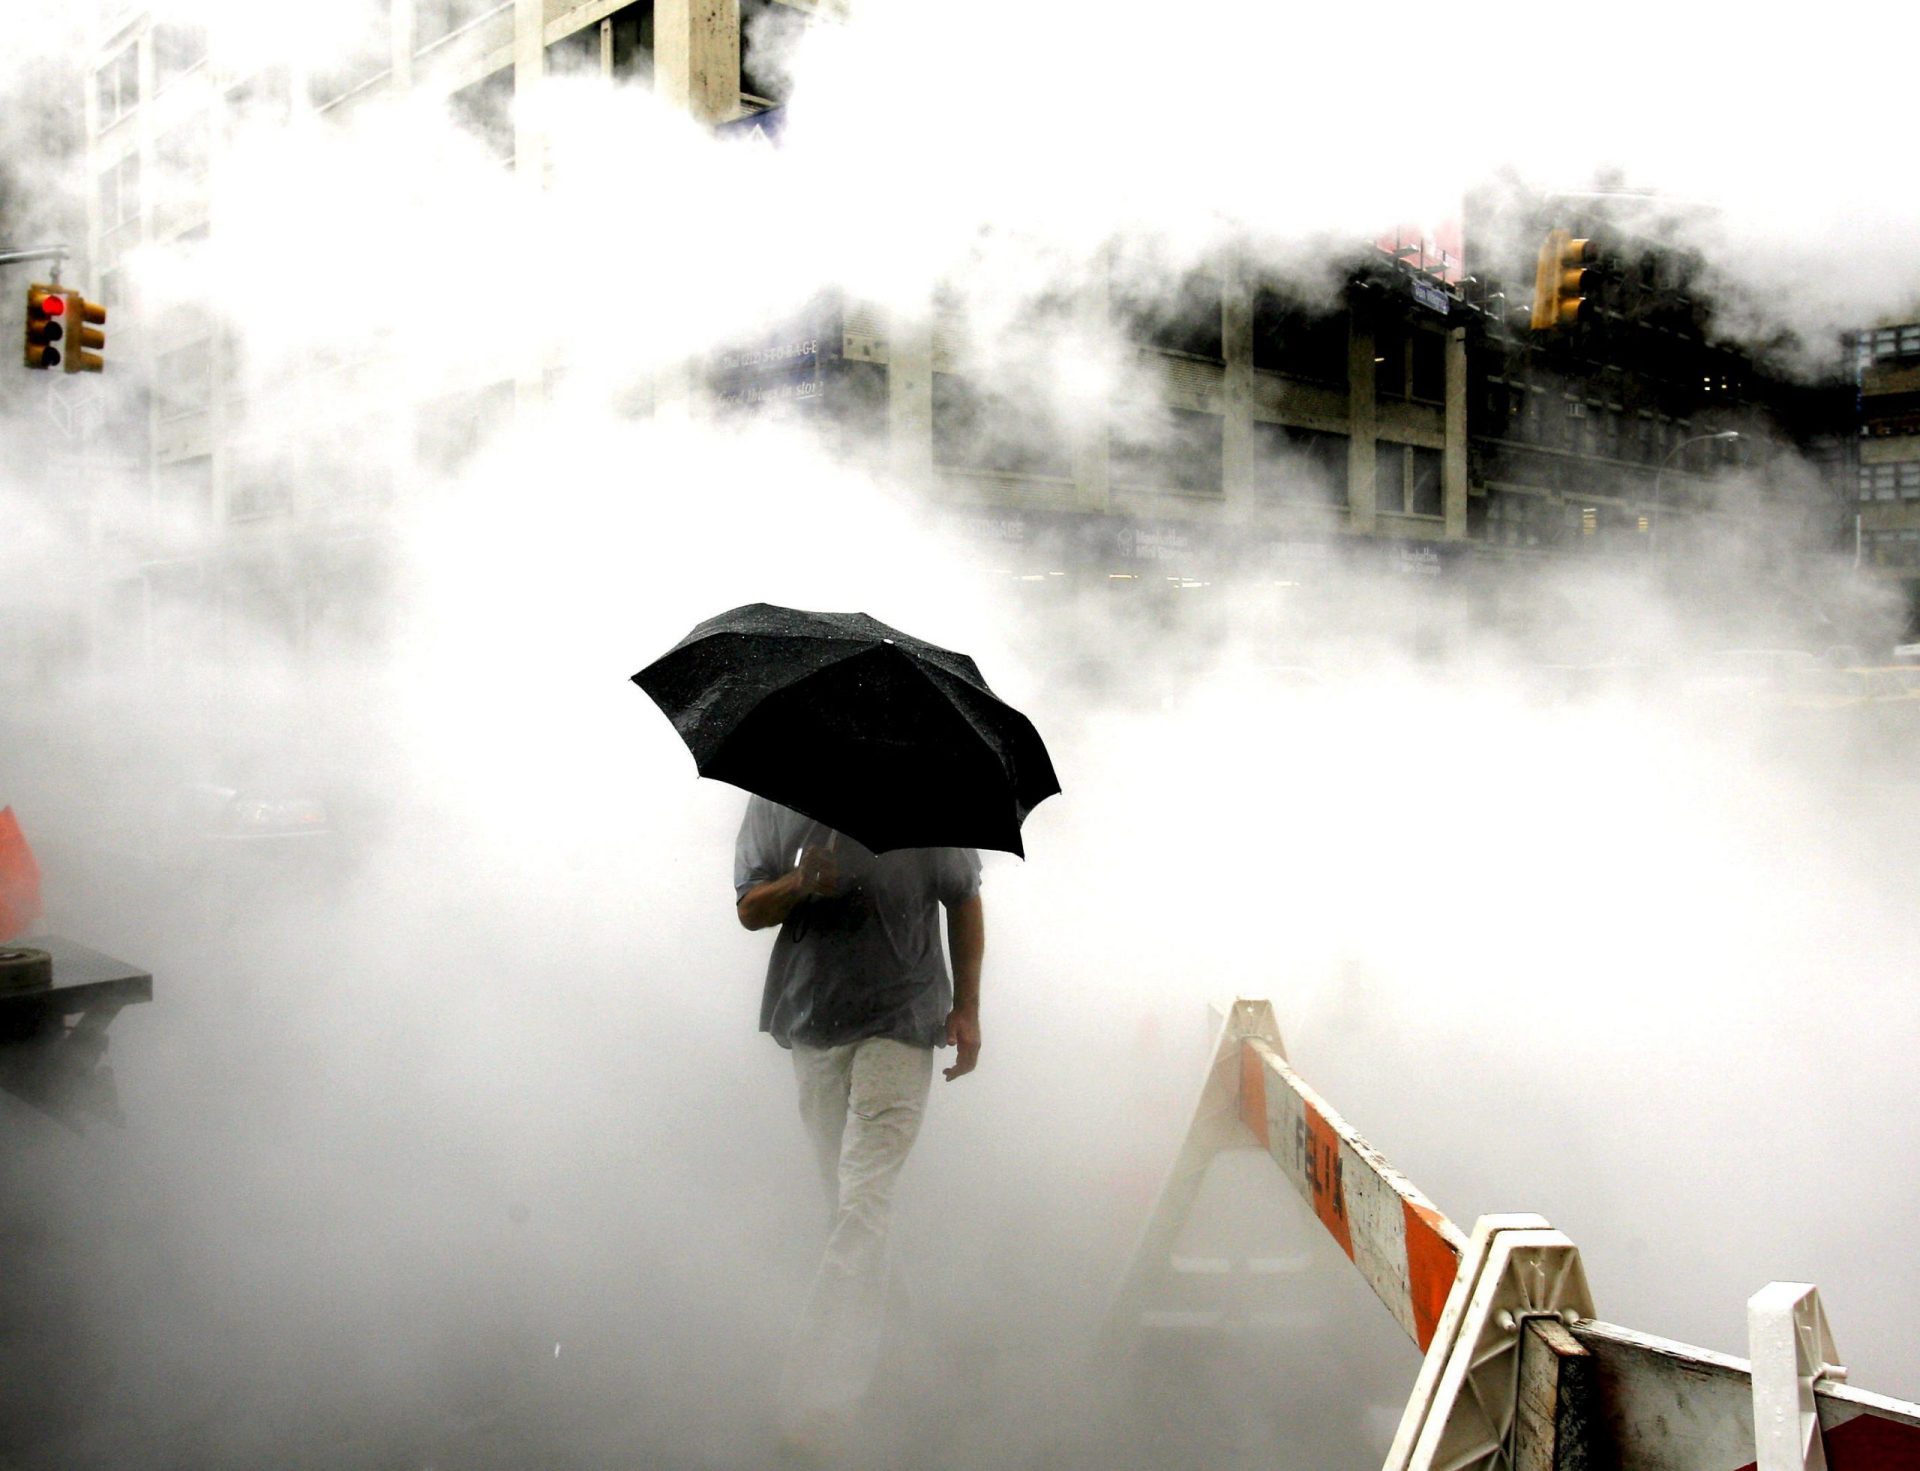 Un hombre con un paraguas atraviesa el vapor que sube del asfalto.